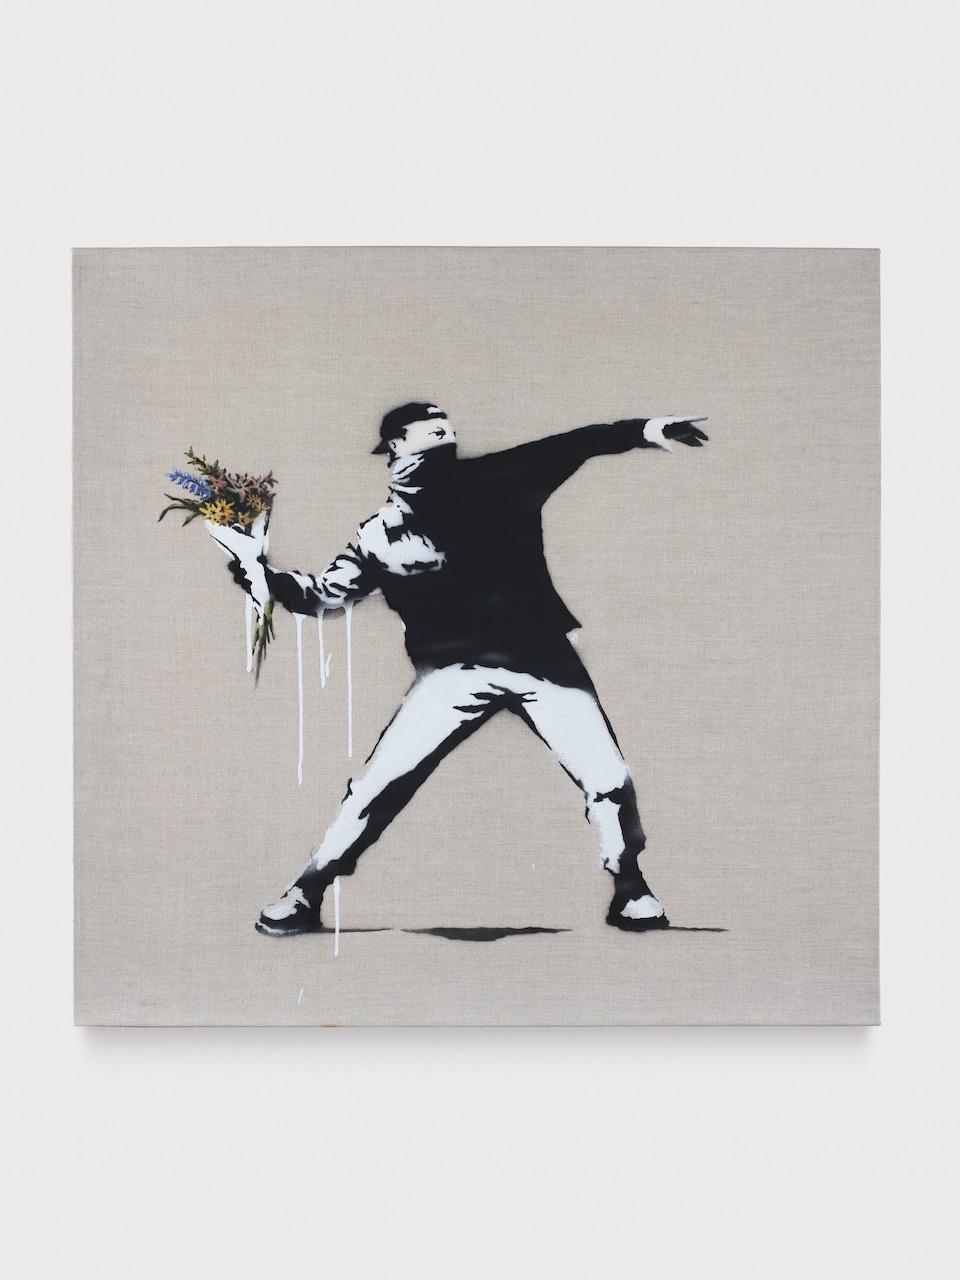 前往Art Basel 2022，一覽世上最神秘藝術家Banksy著名畫作